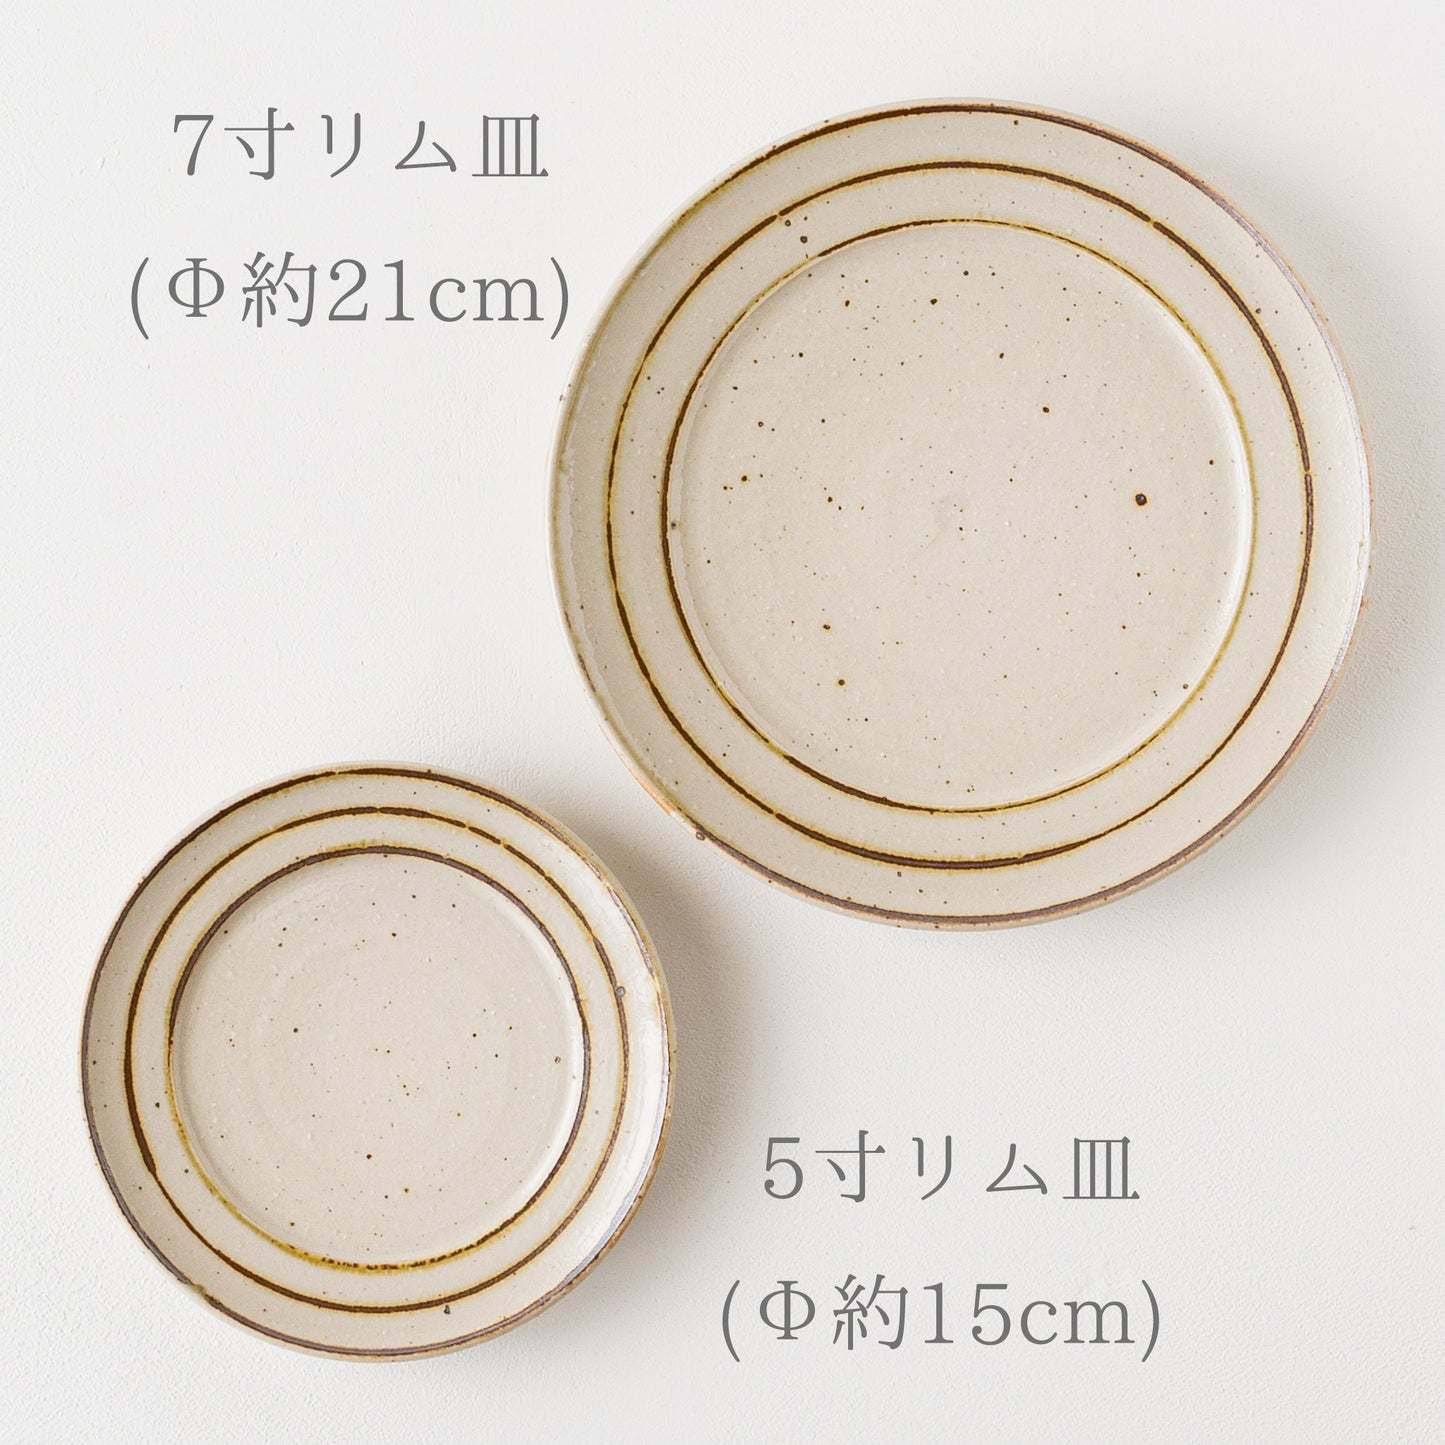 落ち着きのある食卓にしてくれる冨本大輔さんの灰釉鉄絵のお皿